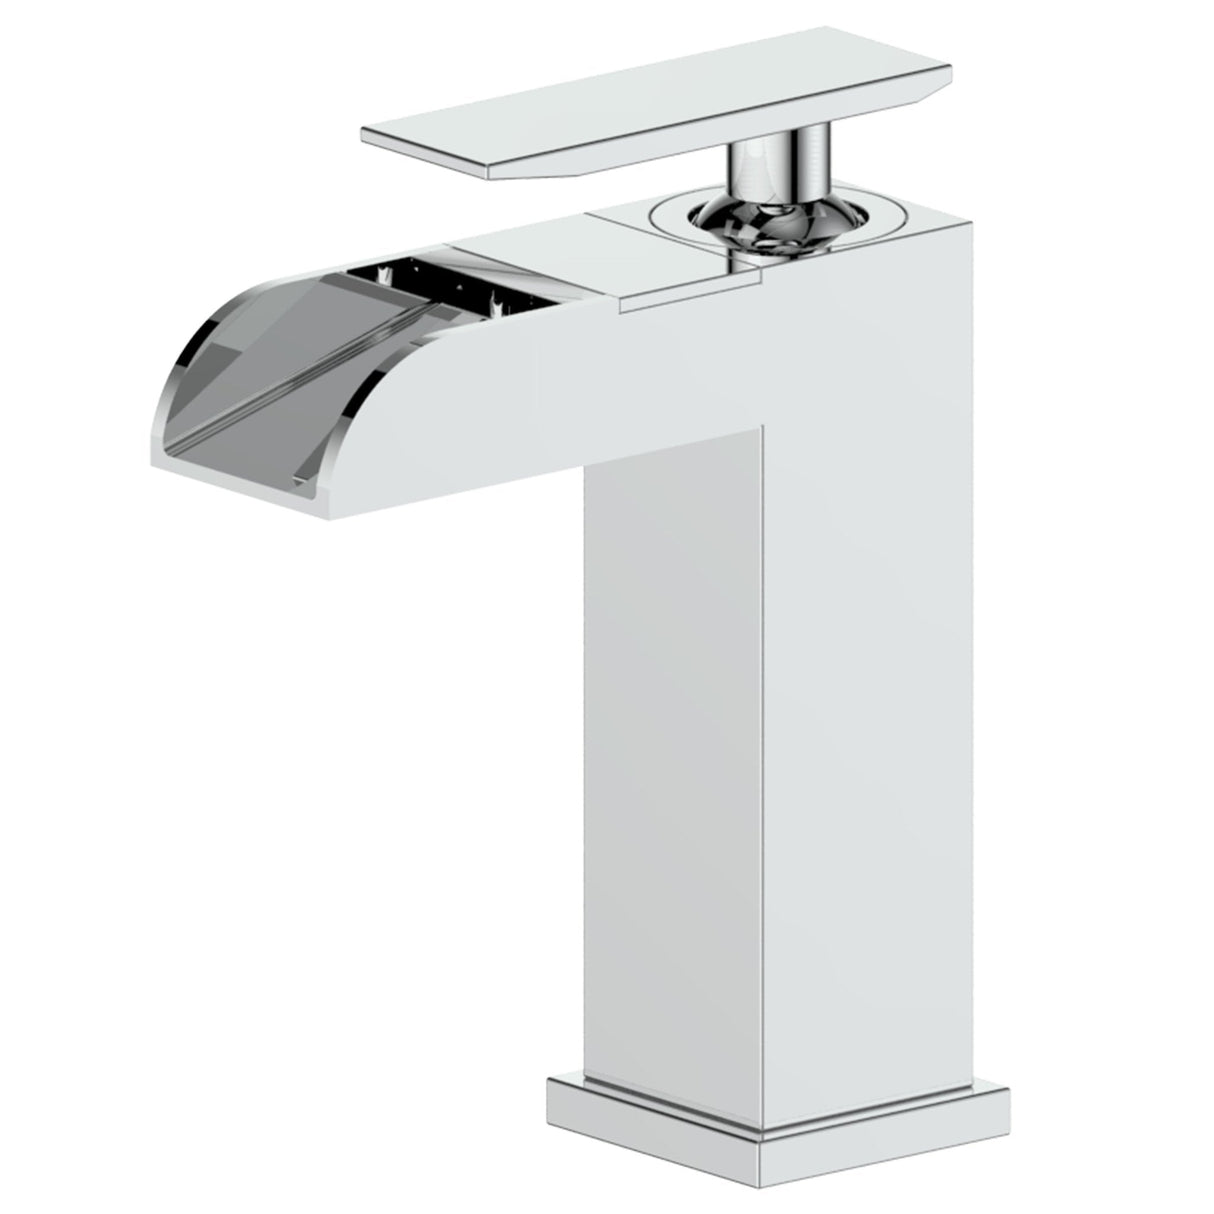 ZLINE Homewood Chrome Bath Faucet (HMD-BF-CH)